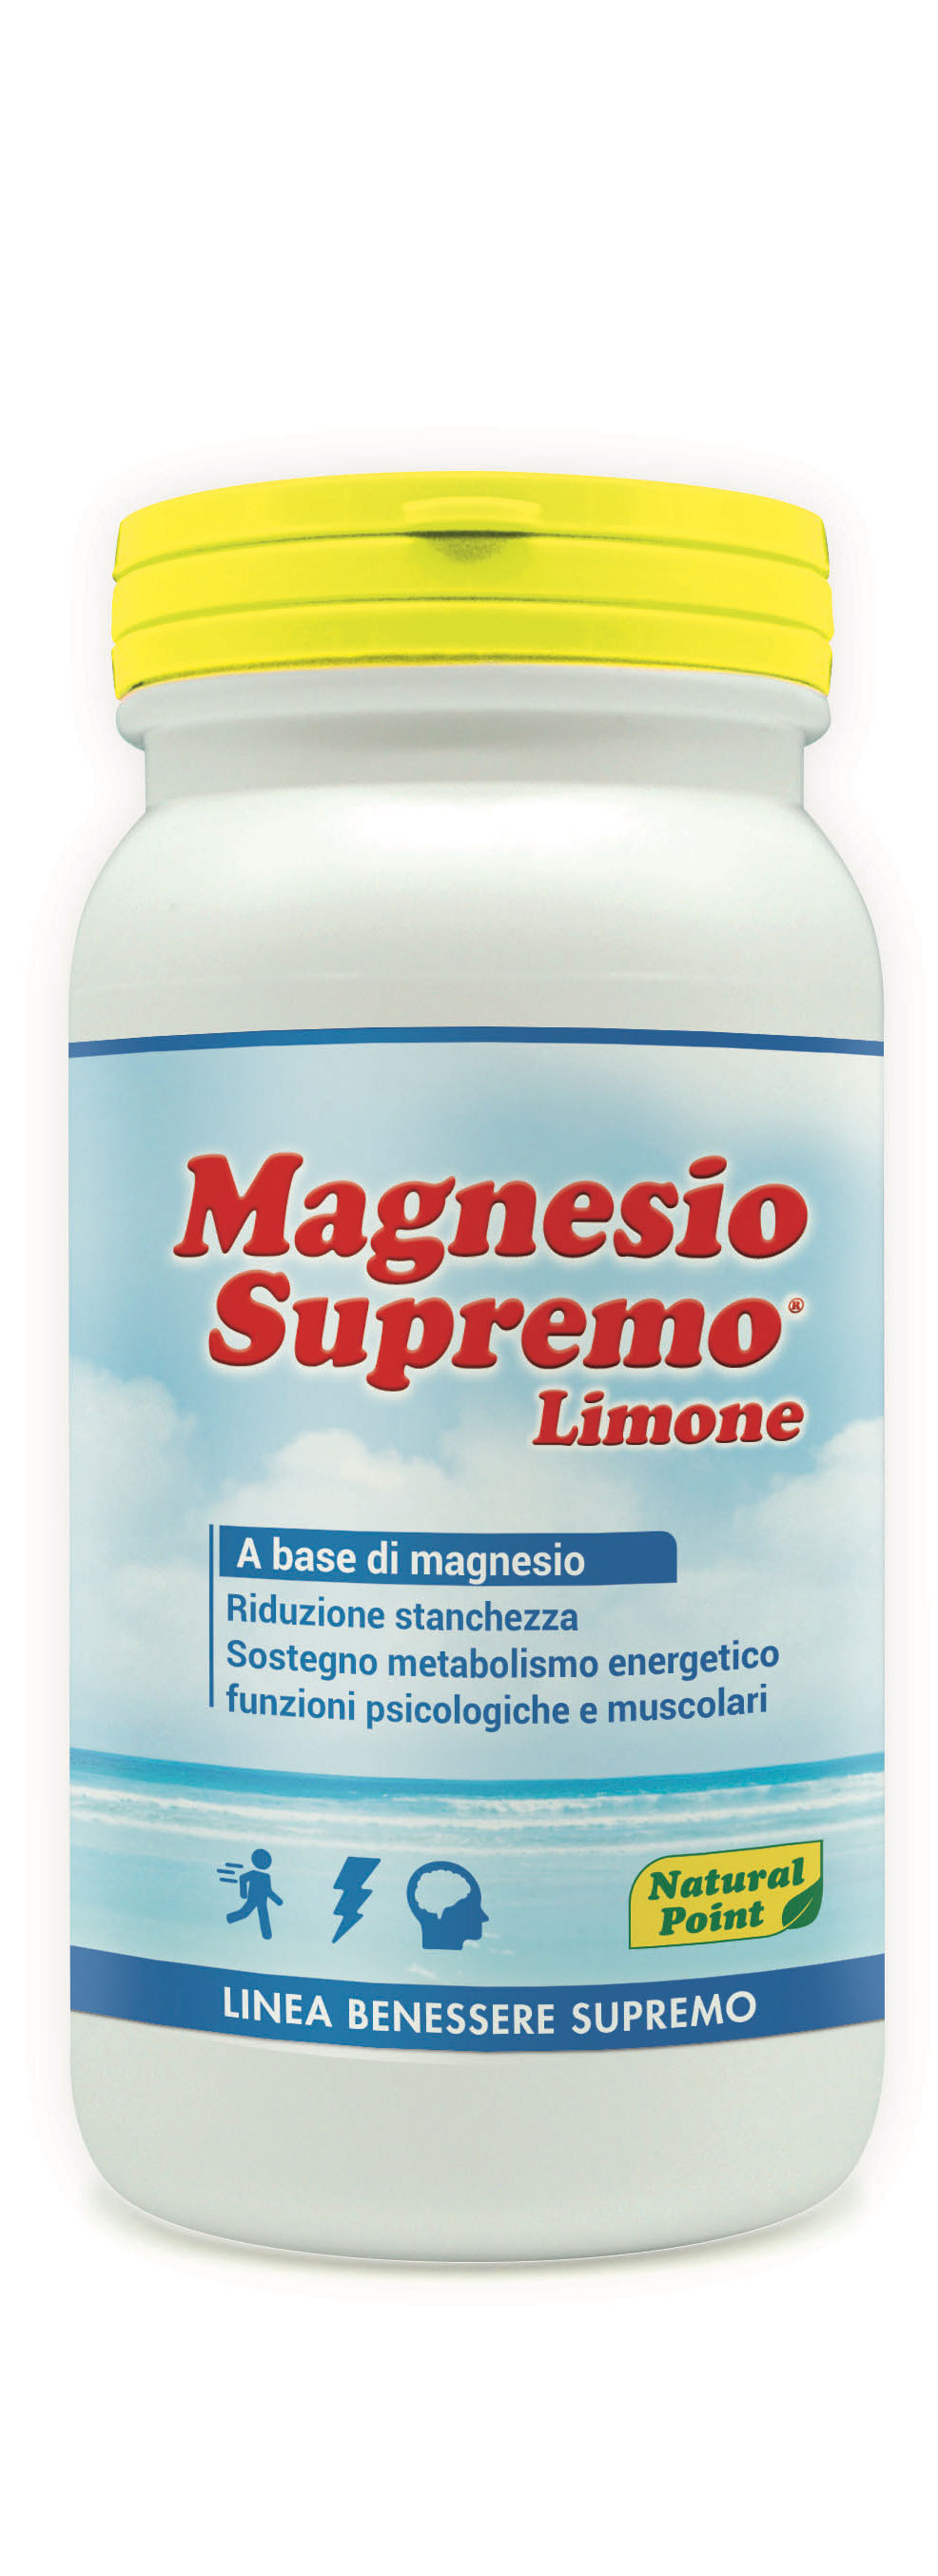 Magnesio Supremo Limone Natural Point 150g Linea Benessere Supremo